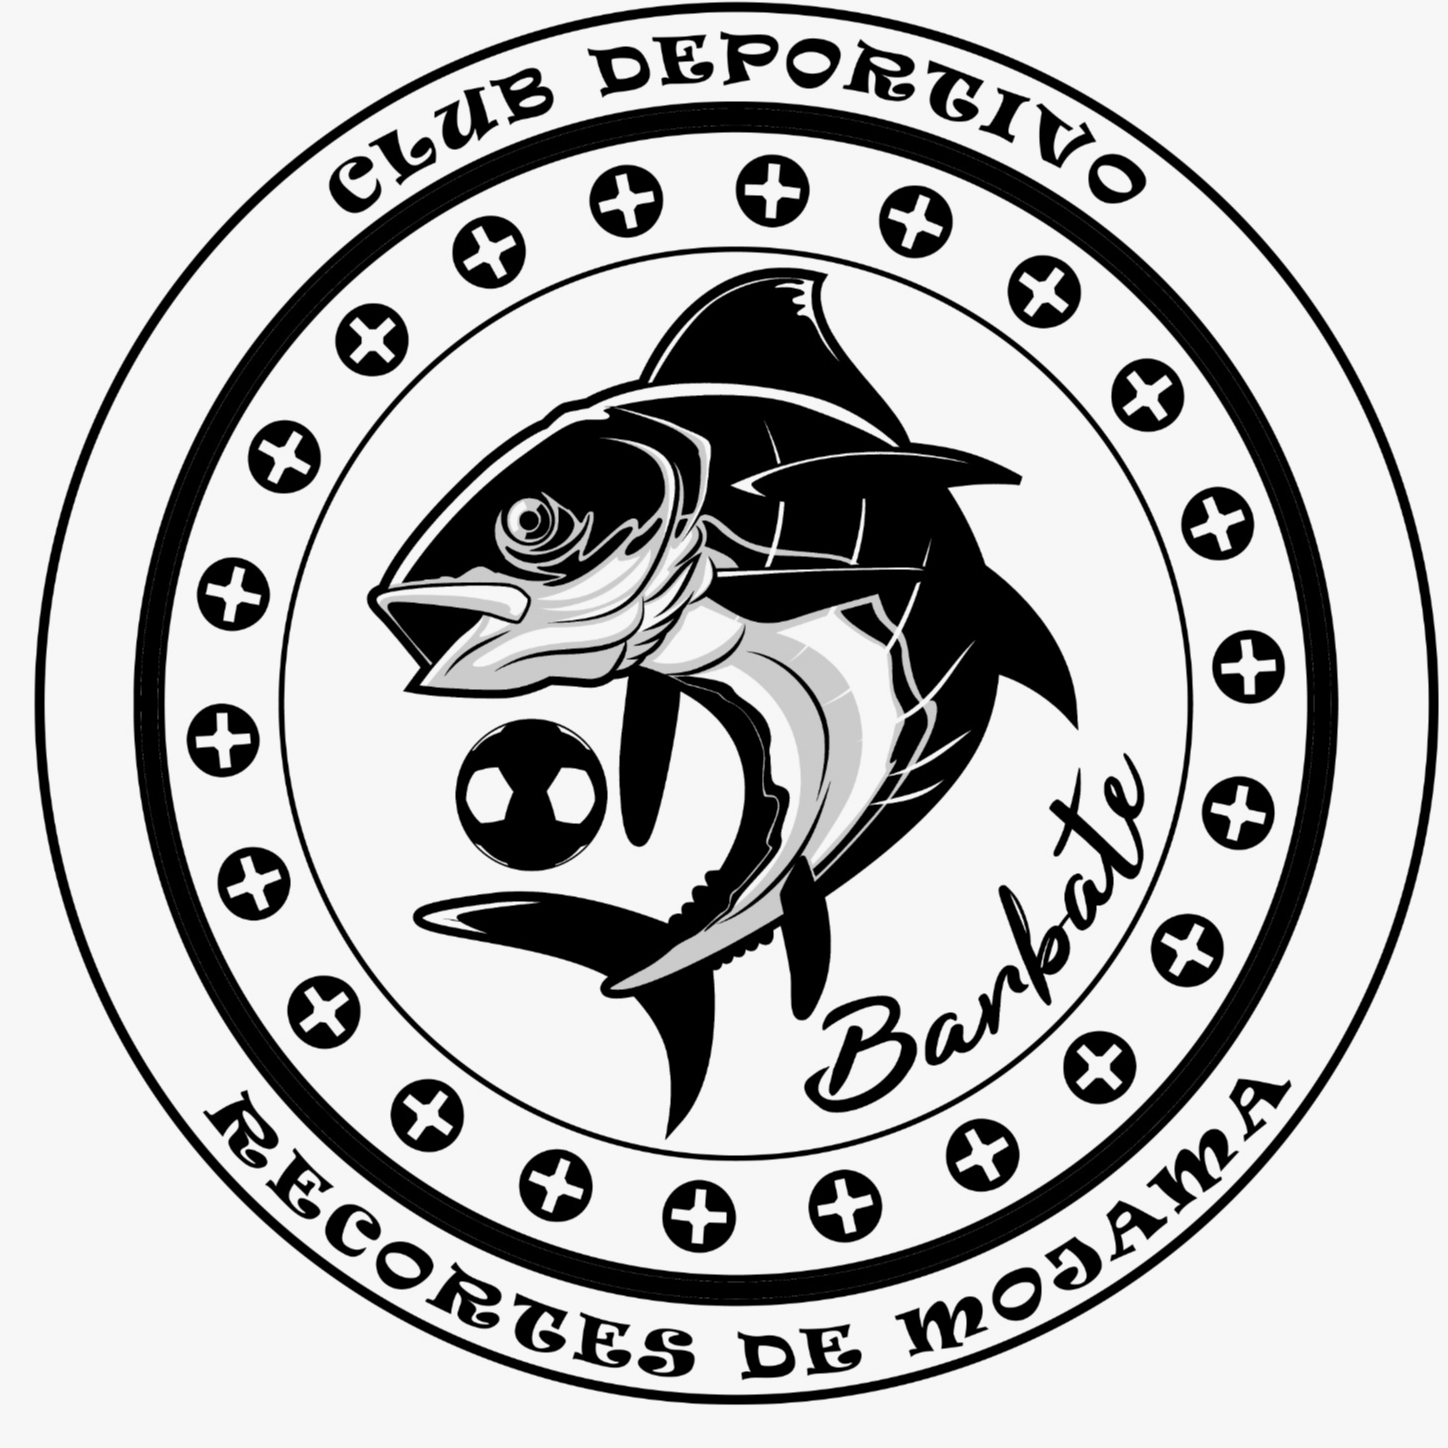 CLUB DEPORTIVO RECORTES DE MOJAMA